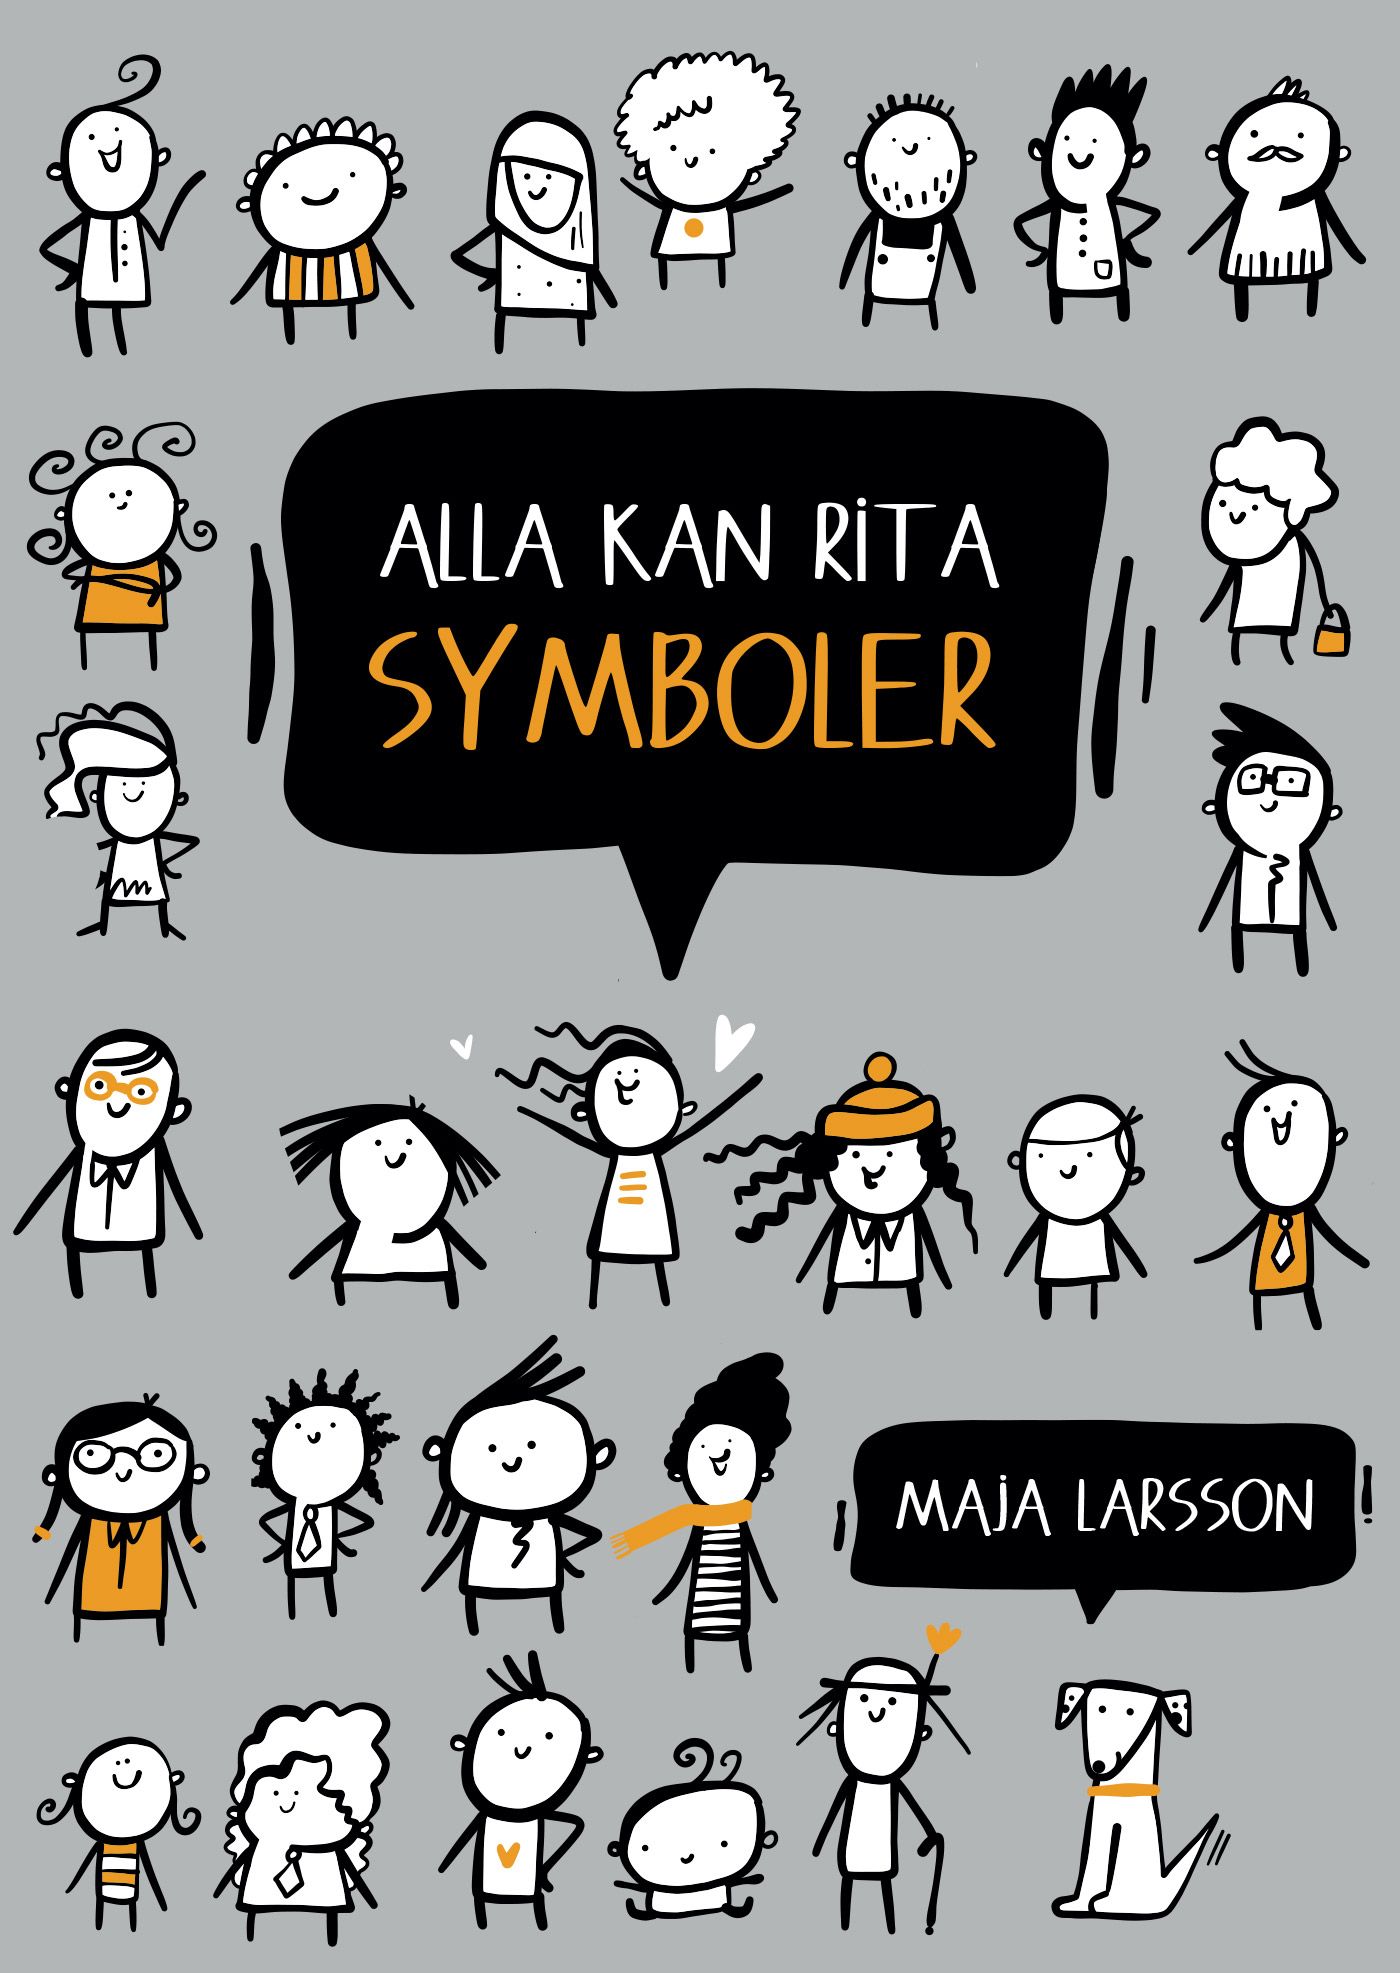 Alla kan rita symboler, e-bok av Maja Larsson